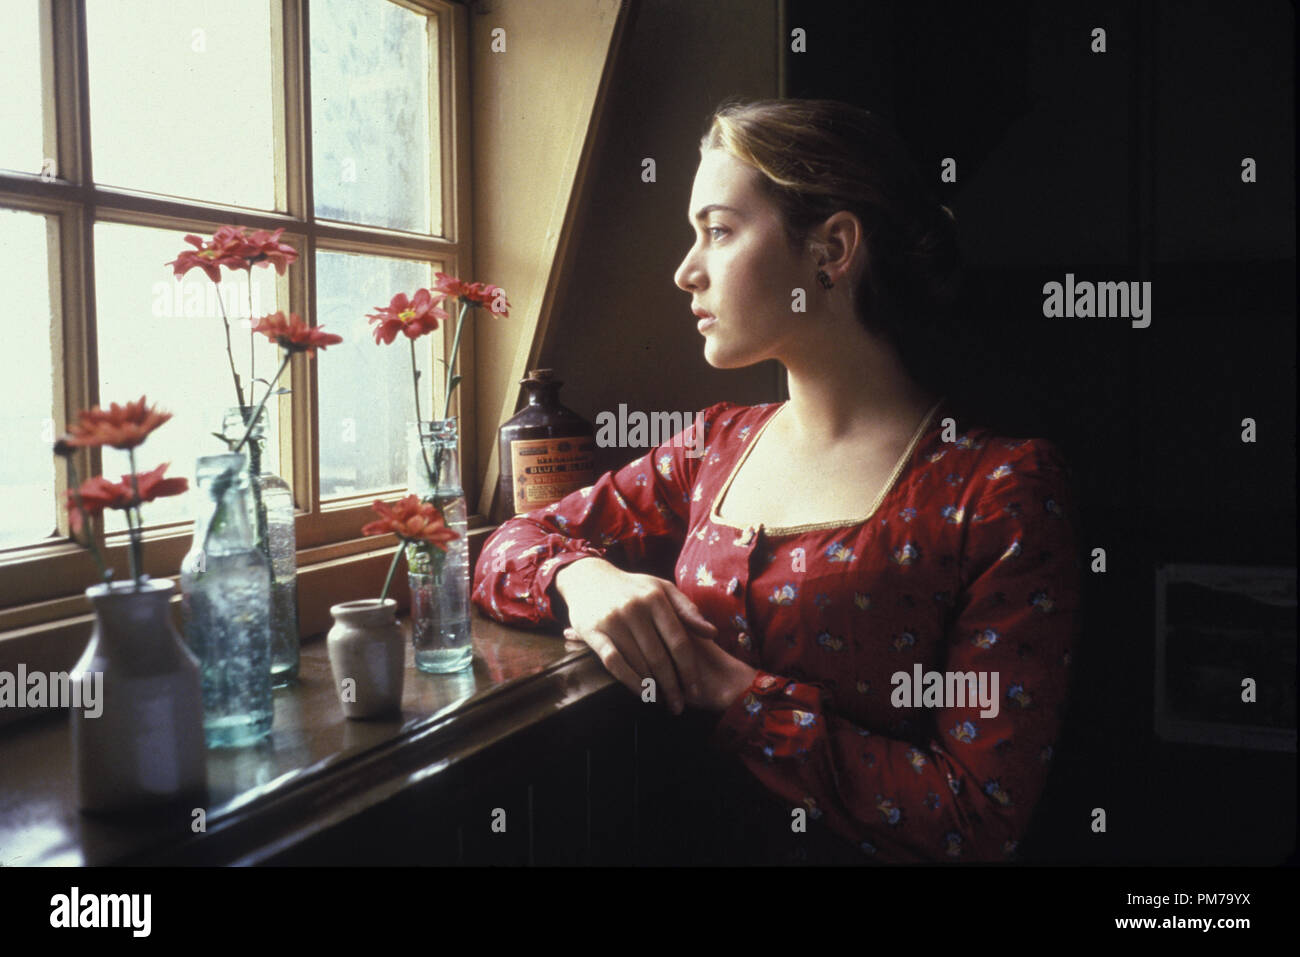 Film noch von 'Jude' Kate Winslet © 1996 Gramercy Photo Credit: Joss Barratt Datei Referenz # 31042472 THA nur für redaktionelle Verwendung - Alle Rechte vorbehalten Stockfoto